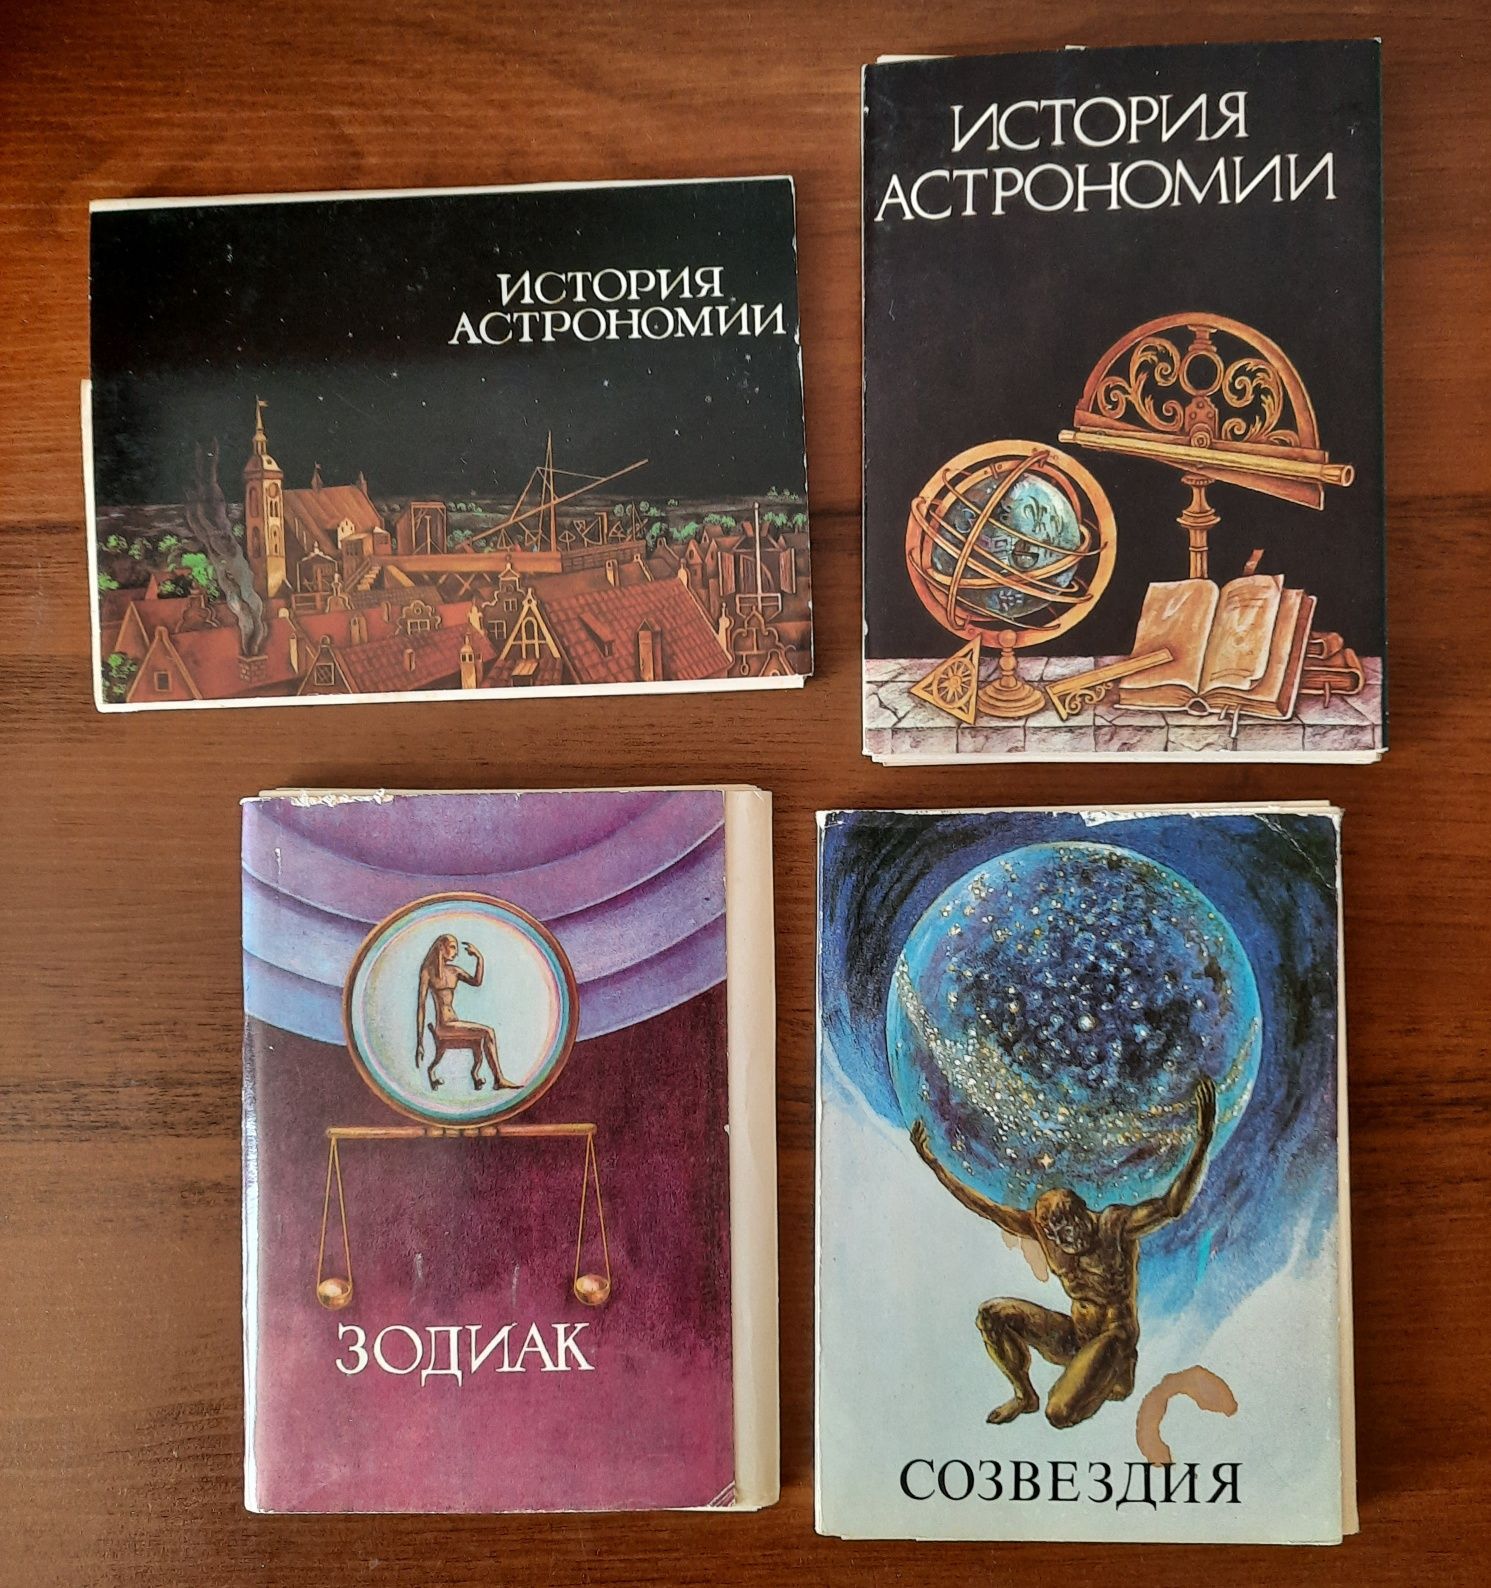 Советские наборы открыток